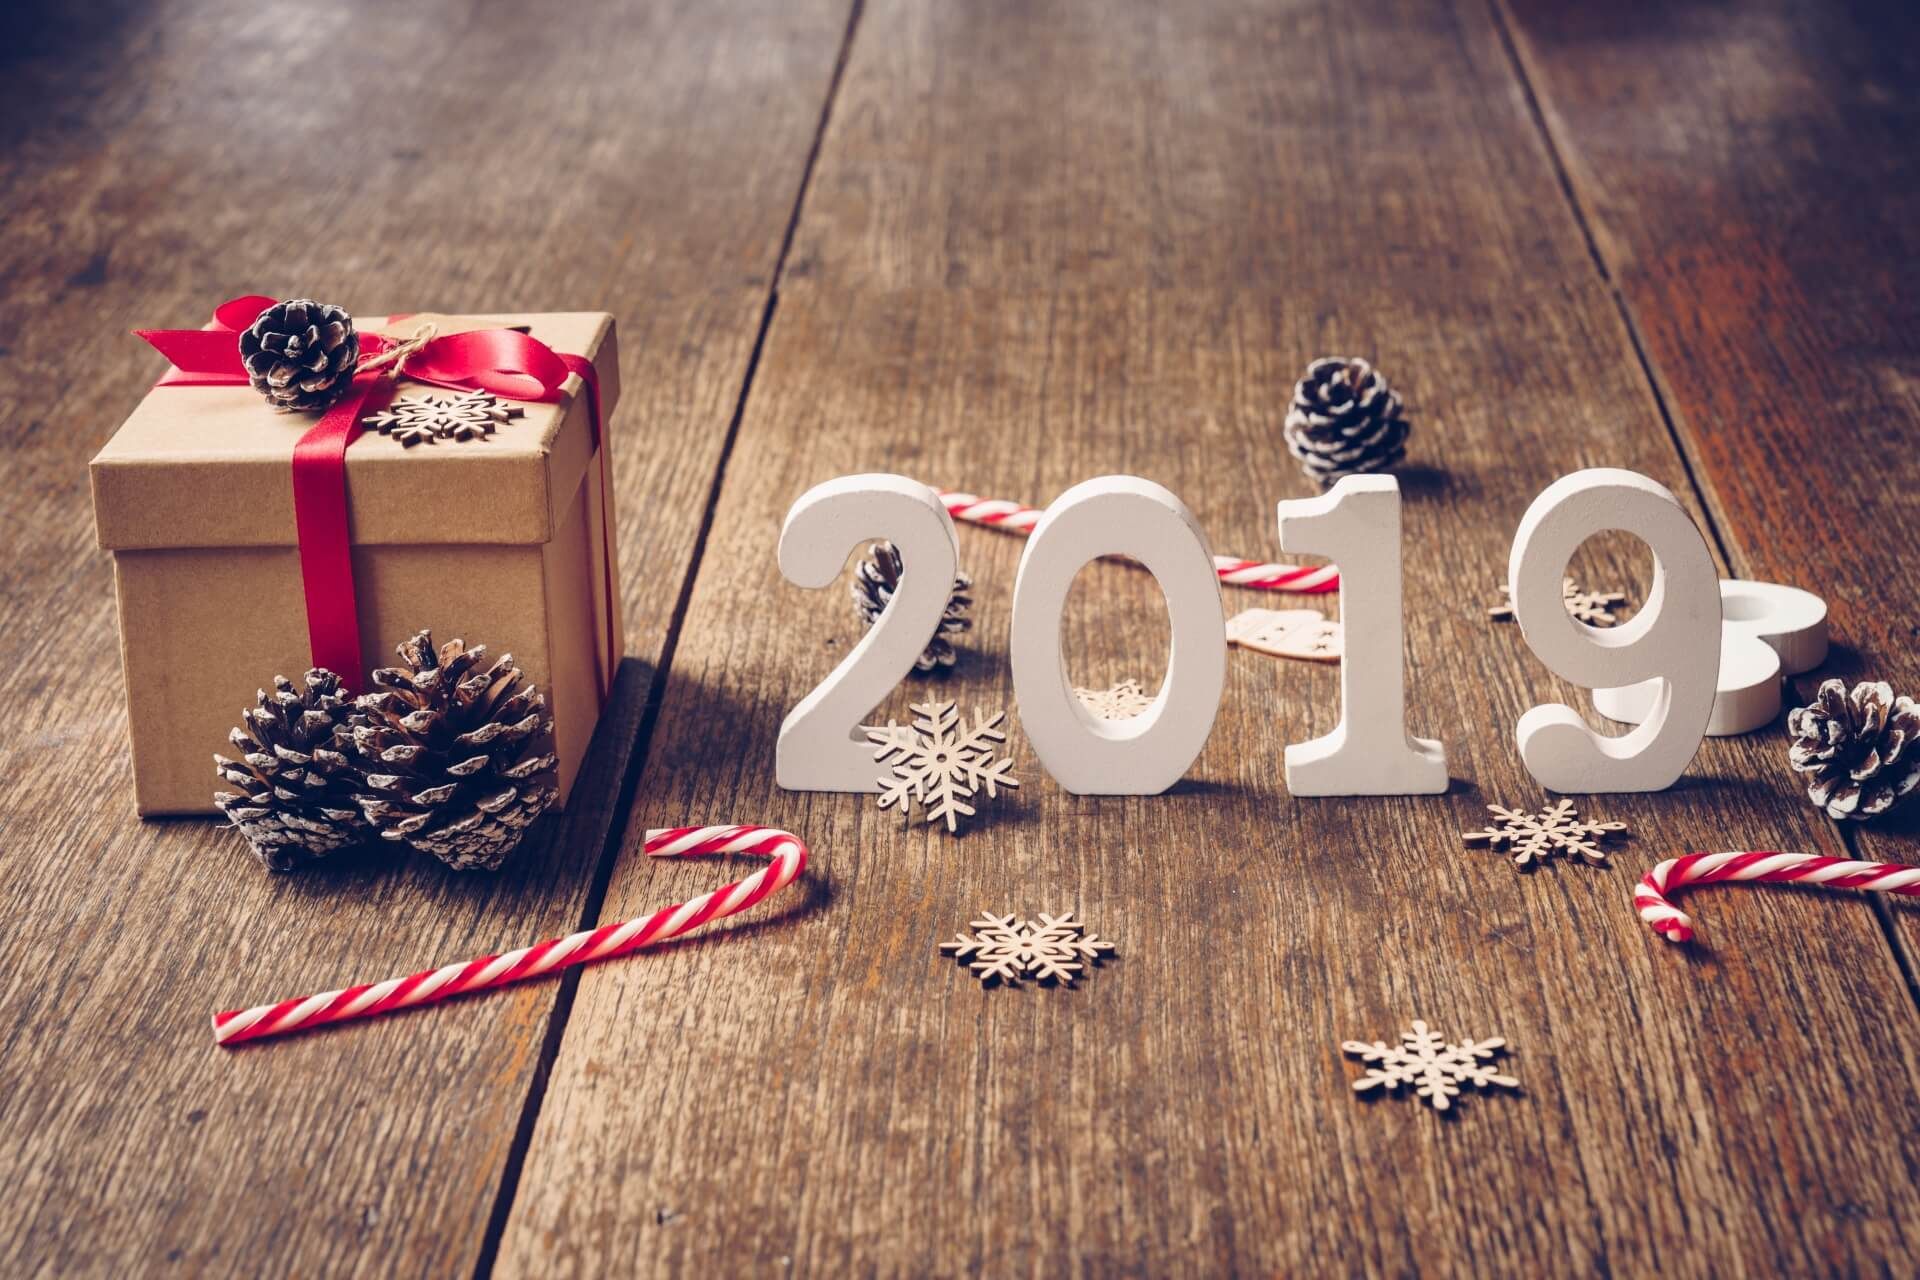 Hình nền chúc mừng năm mới 2019 - Hình nền tết 2019